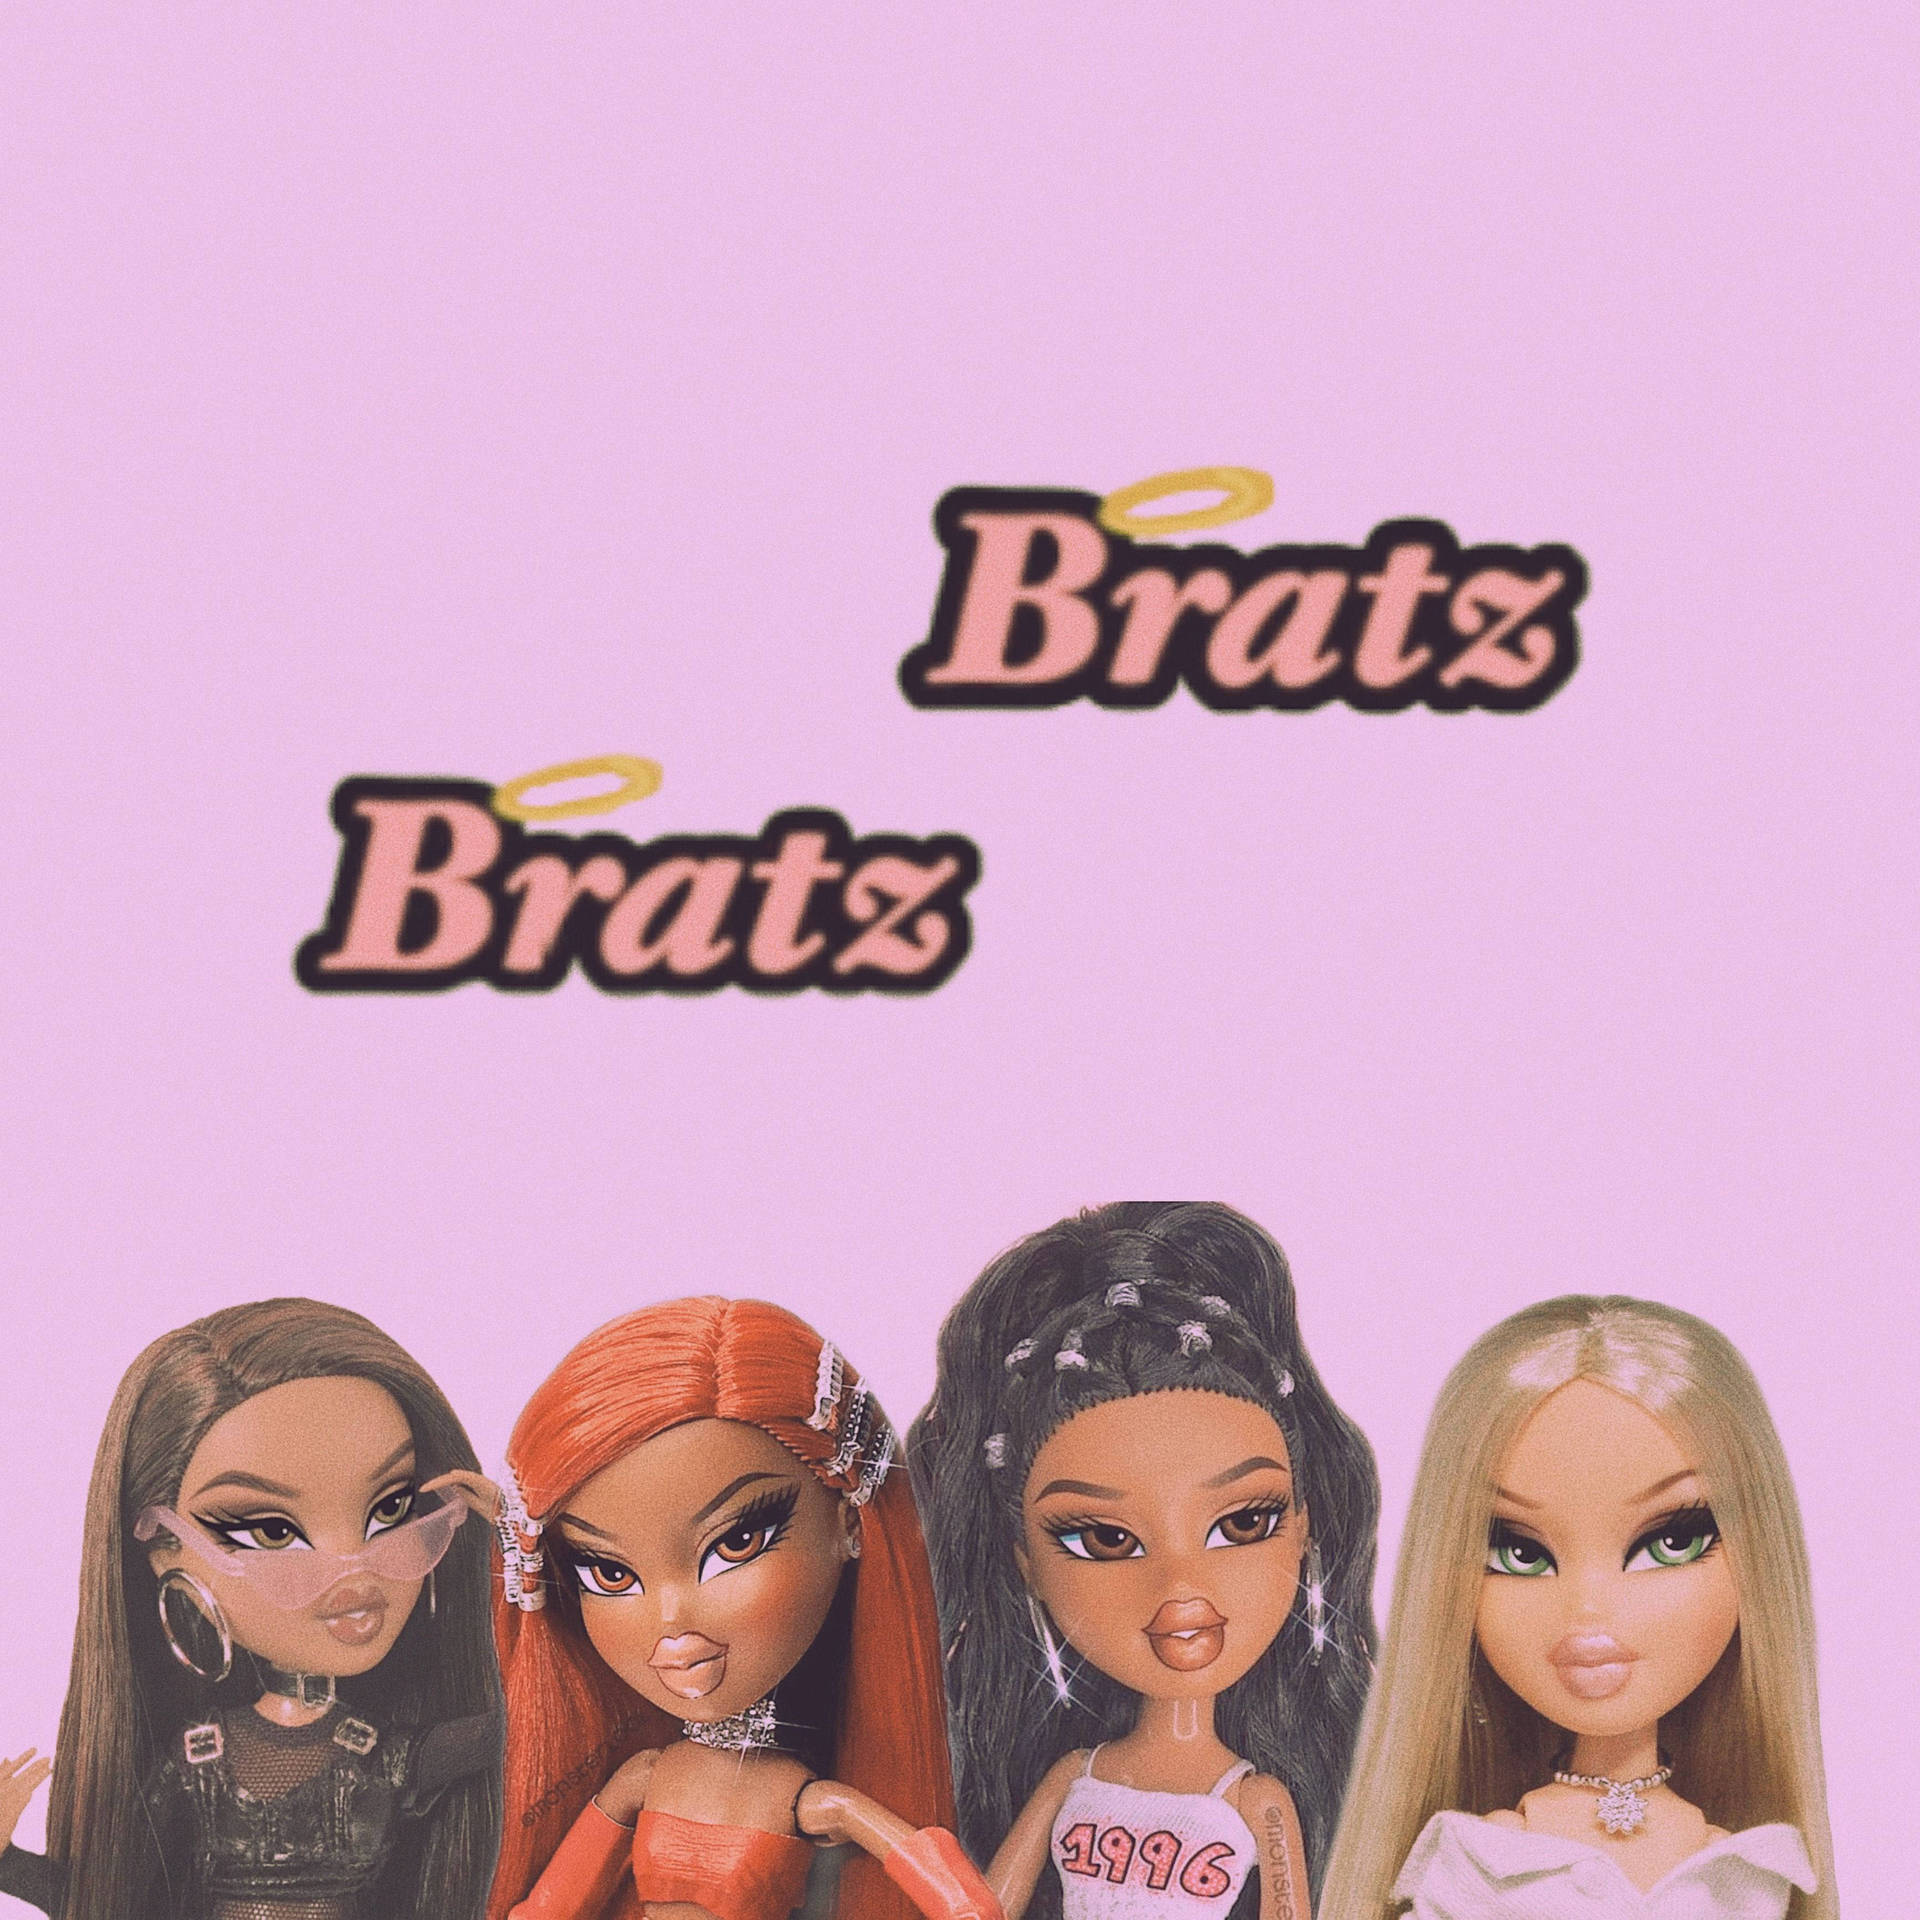 Bratz Dolls Pictures Wallpaper